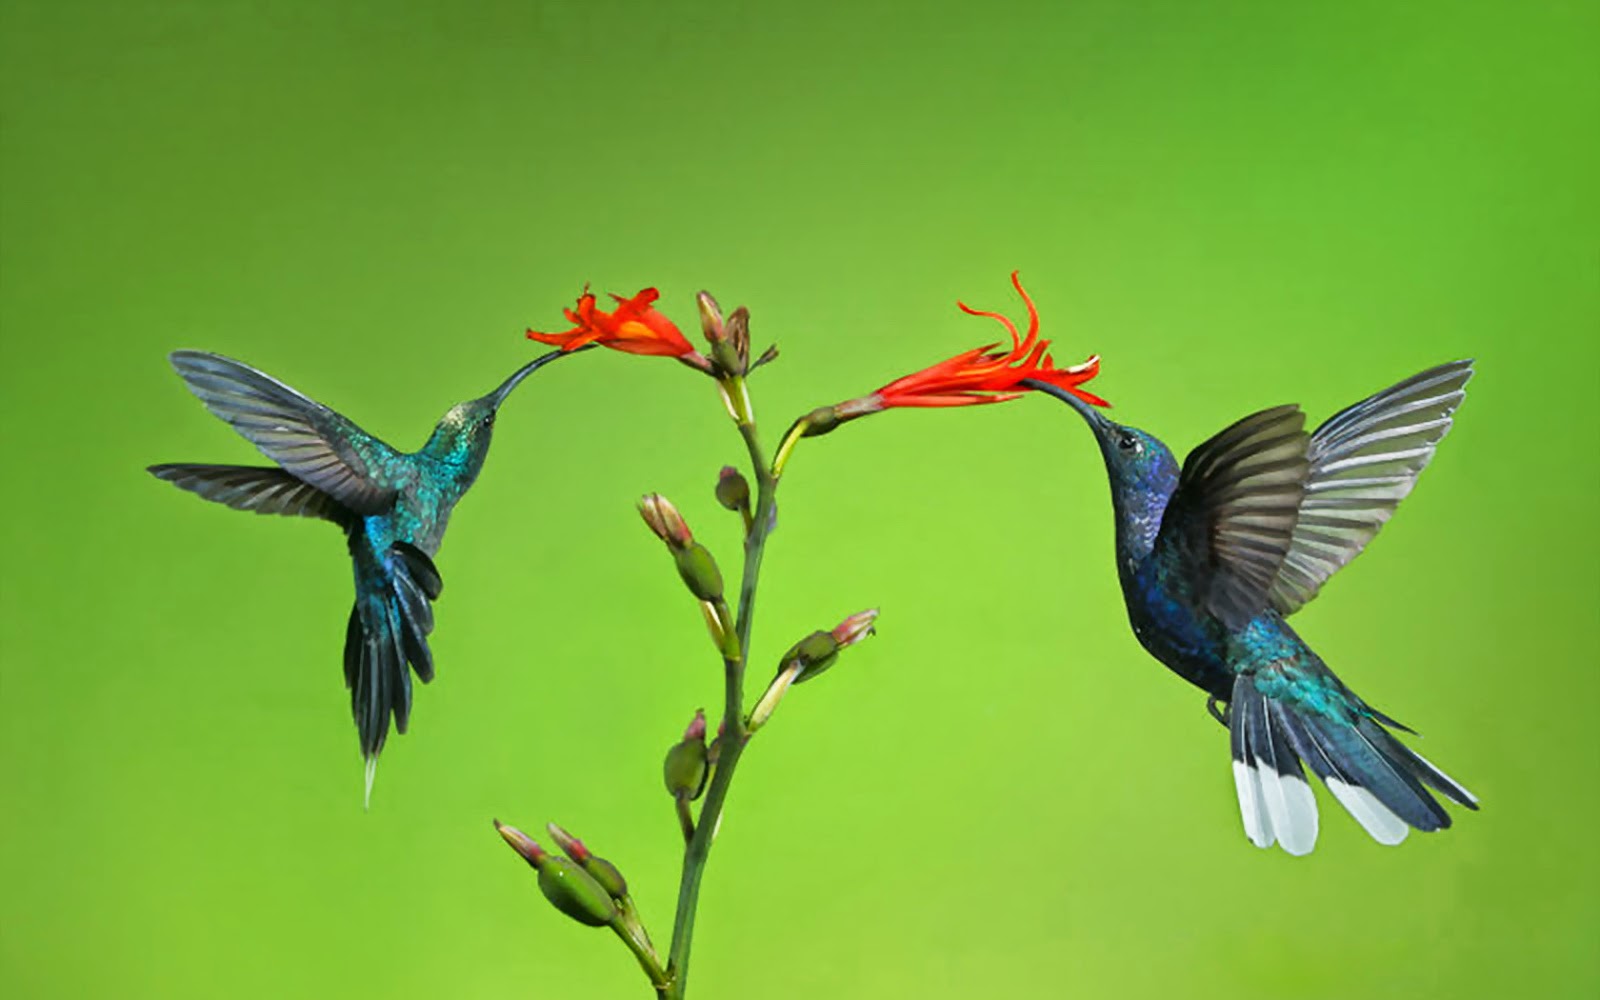 Tải 25 hình ảnh các loài chim đẹp nhất thế giới - [Kích thước hình ảnh: 1600x1000 px]